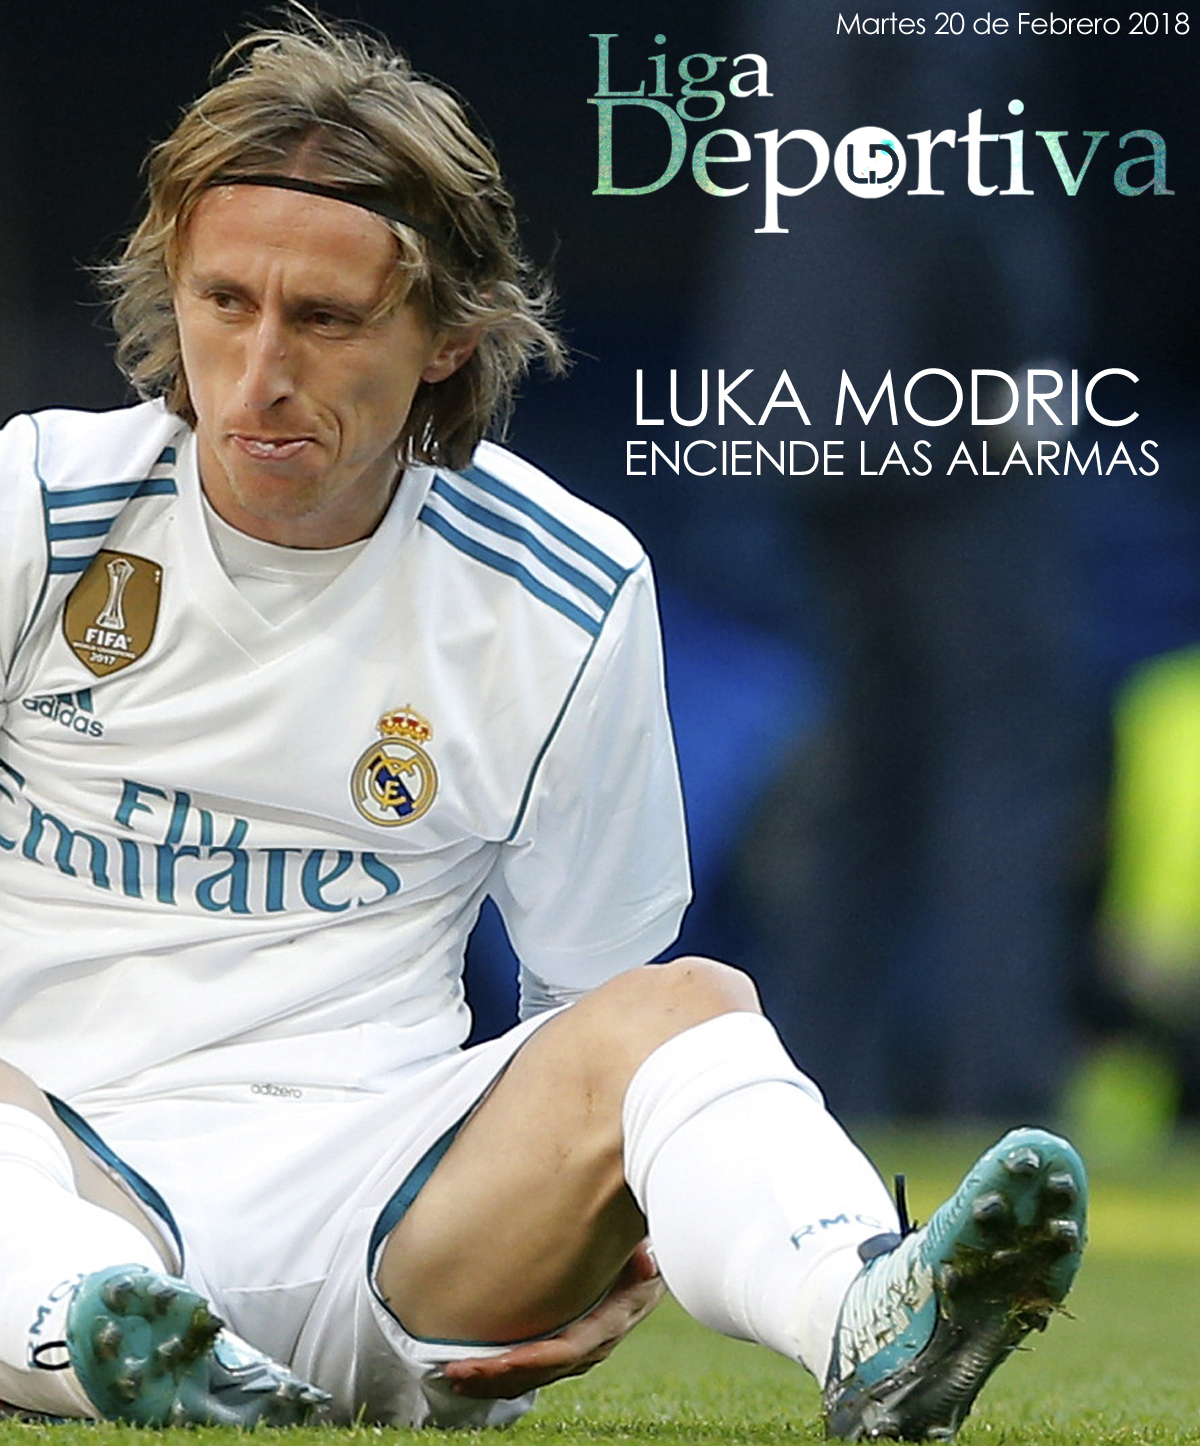 Luka Modric enciende las alarmas en el Real Madrid 